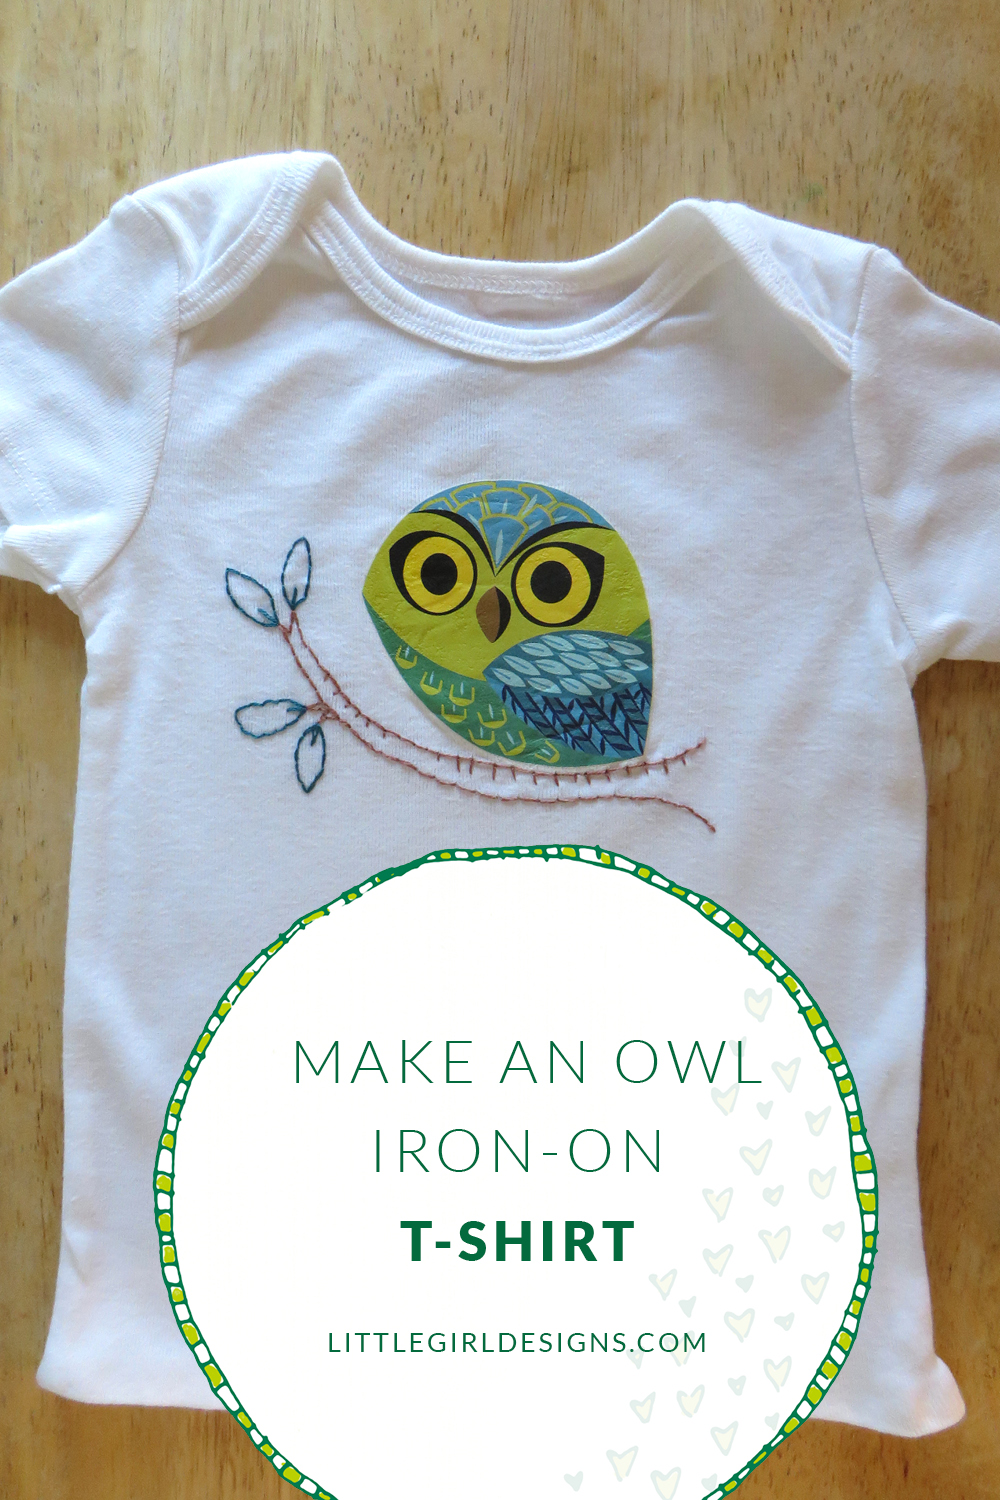 Make an Owl Iron-on T-shirt